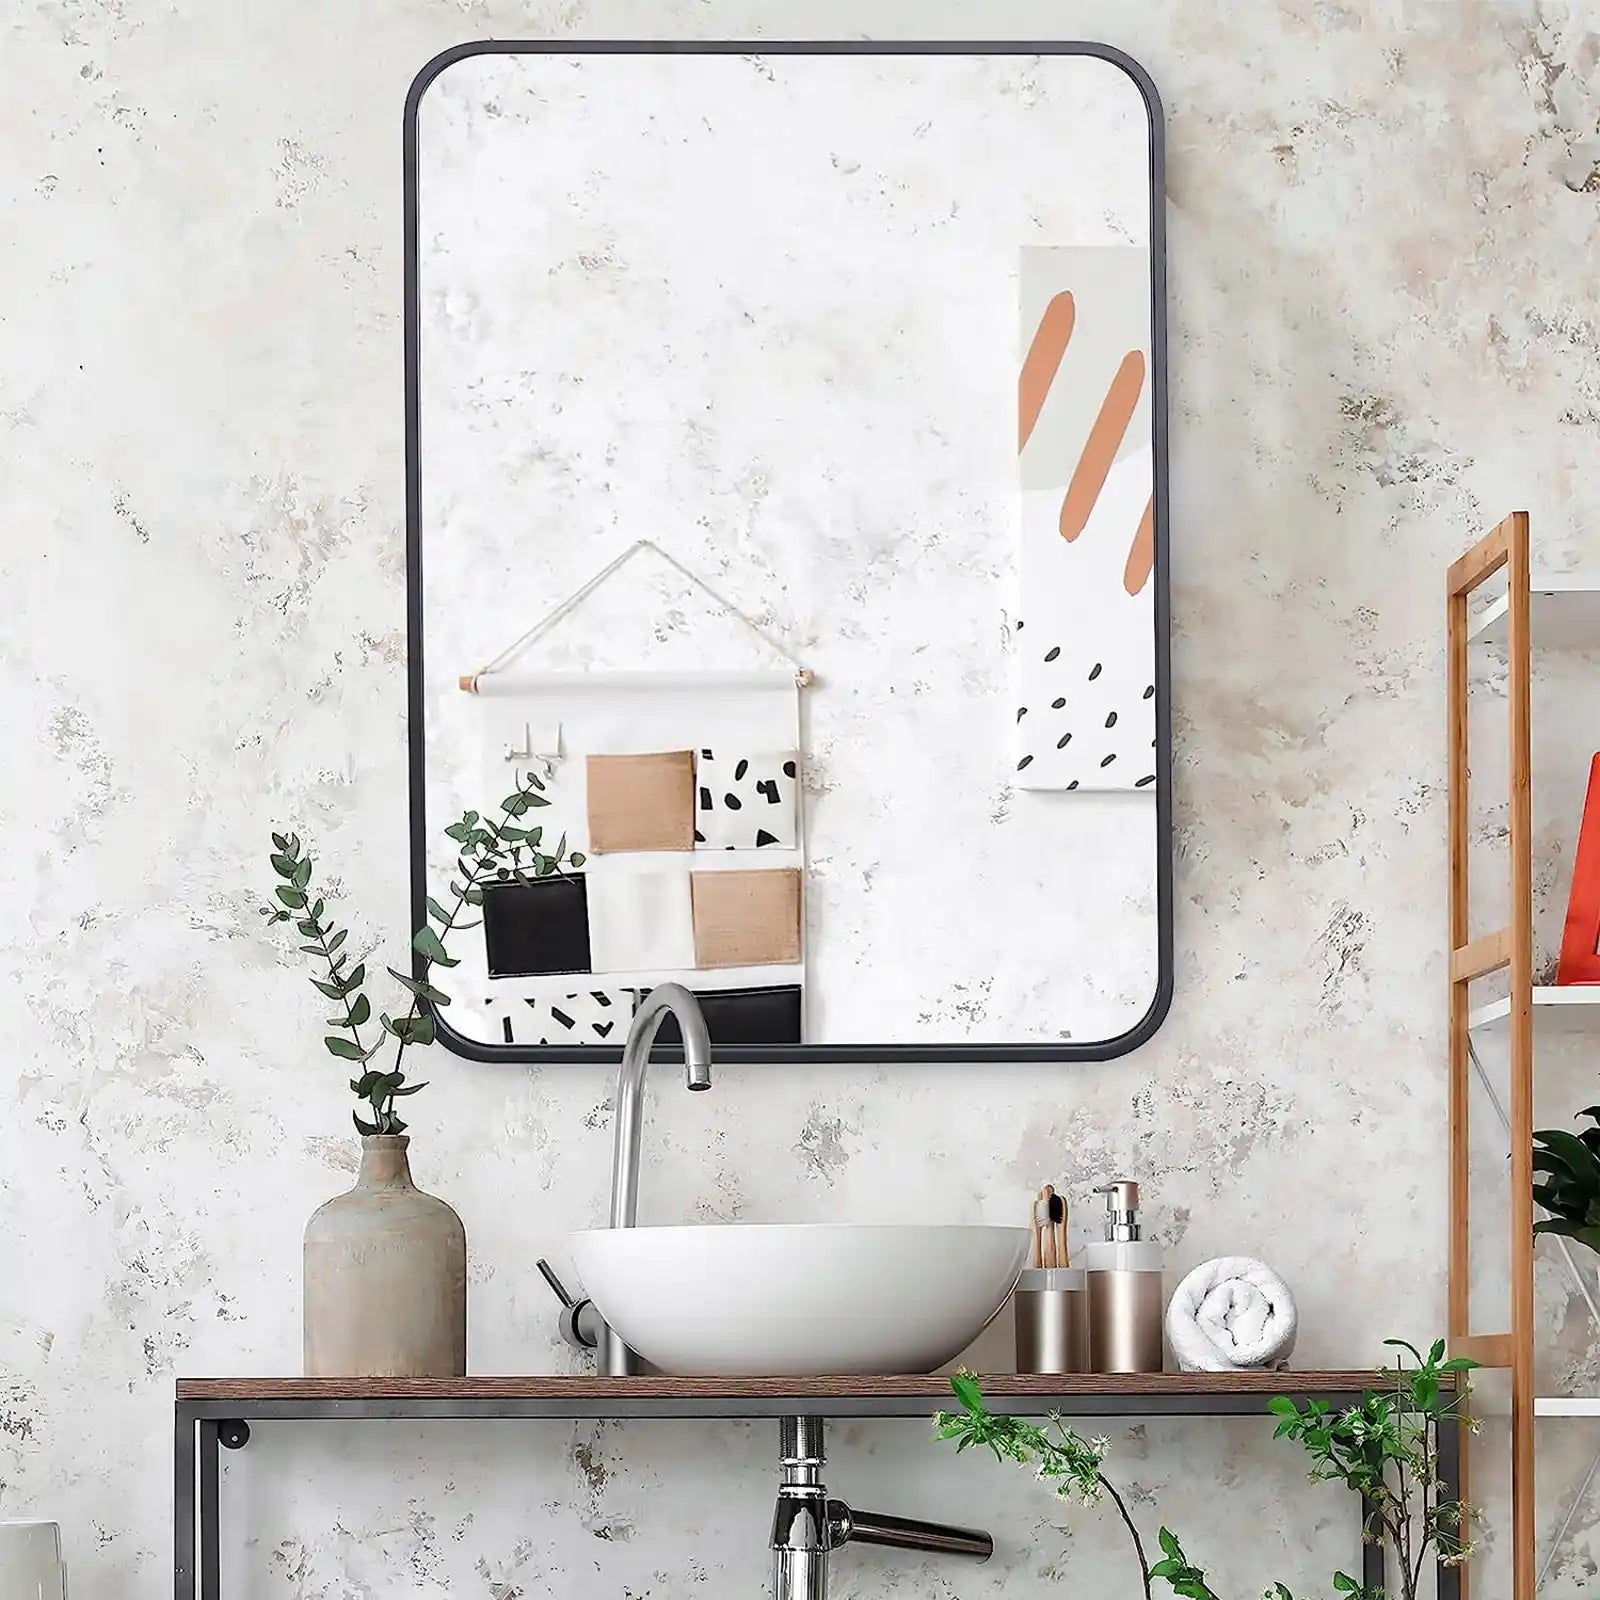 Espejo de pared rectangular con marco de metal negro, espejo de baño de 22" x 30" con borde puntiagudo para entradas, baños, salas de estar